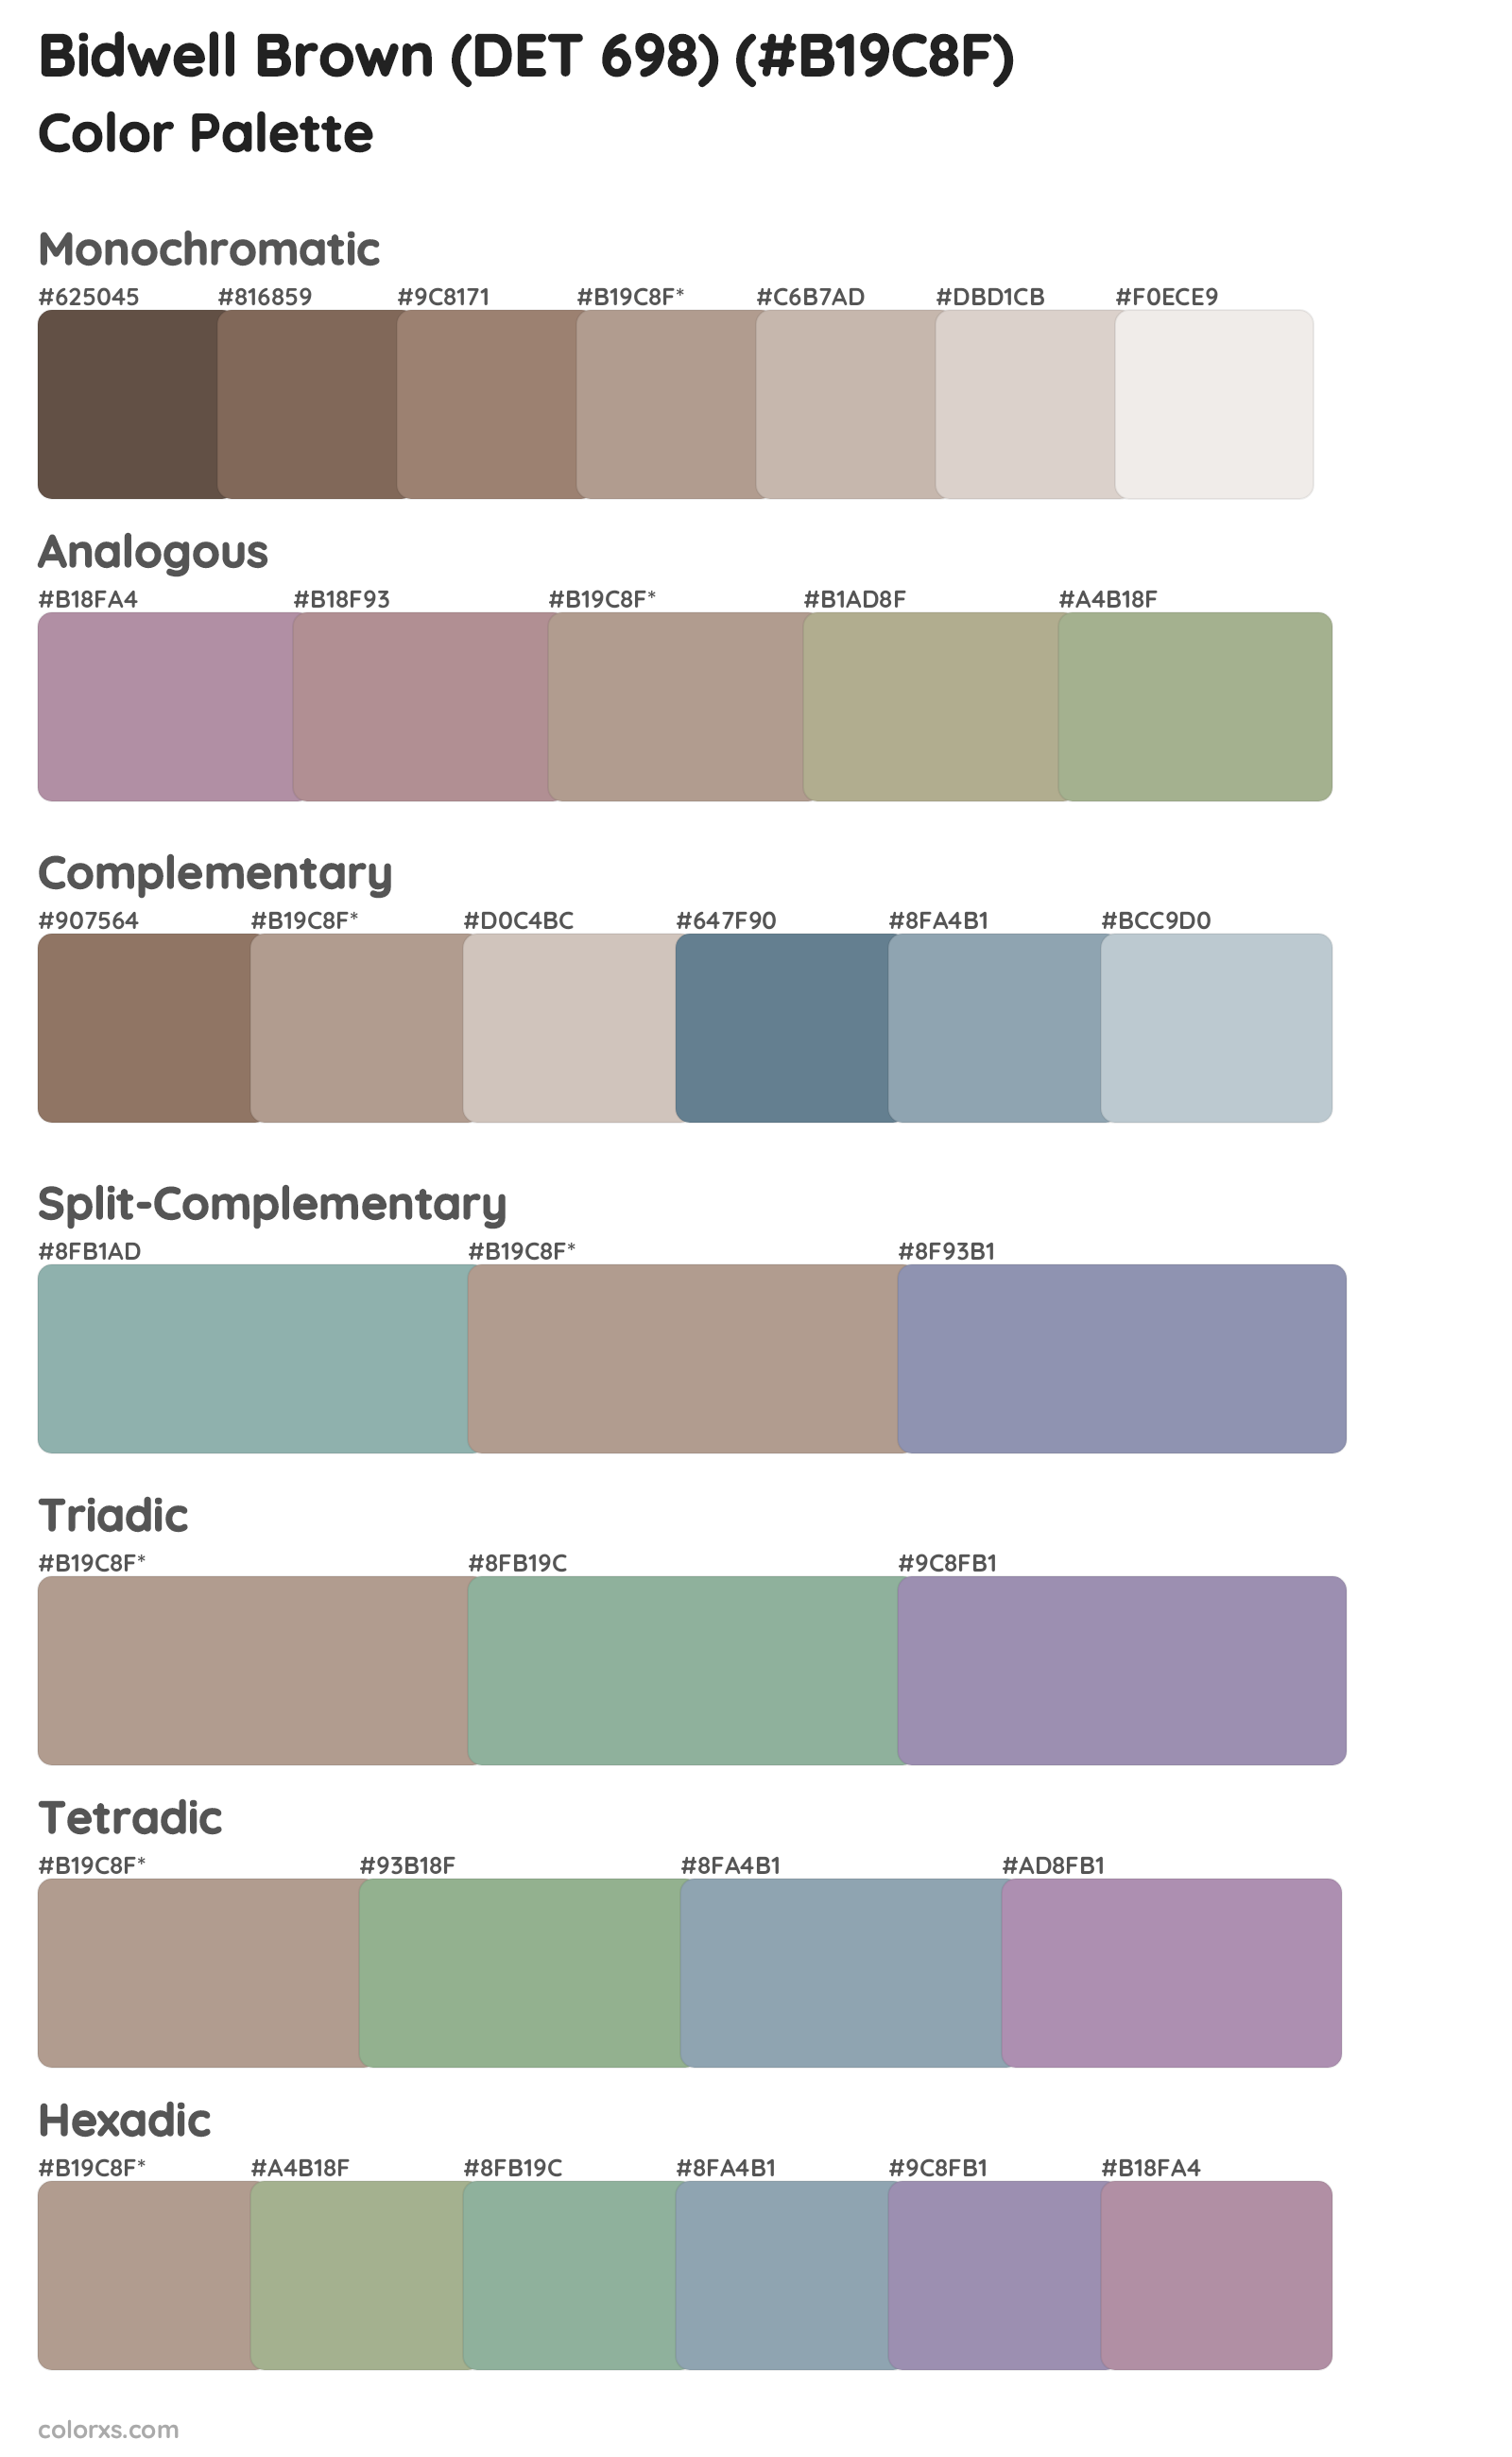 Bidwell Brown (DET 698) Color Scheme Palettes